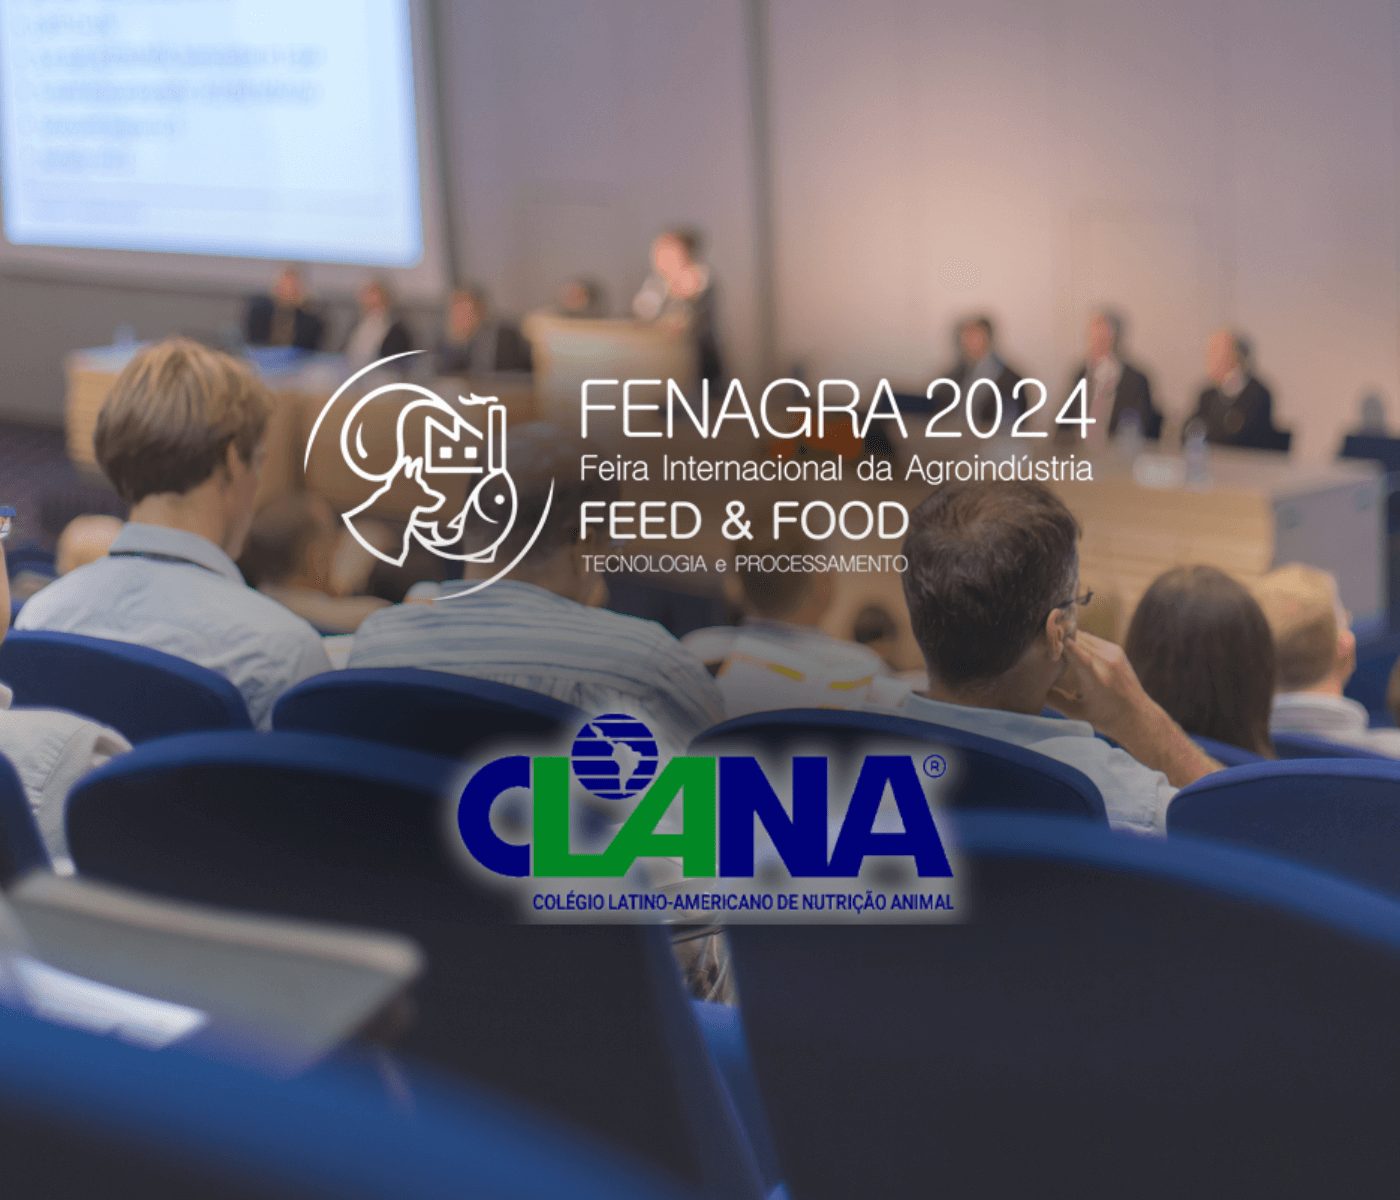 Fenagra 2024 recebe, pela primeira vez, o X CLANA no Brasil